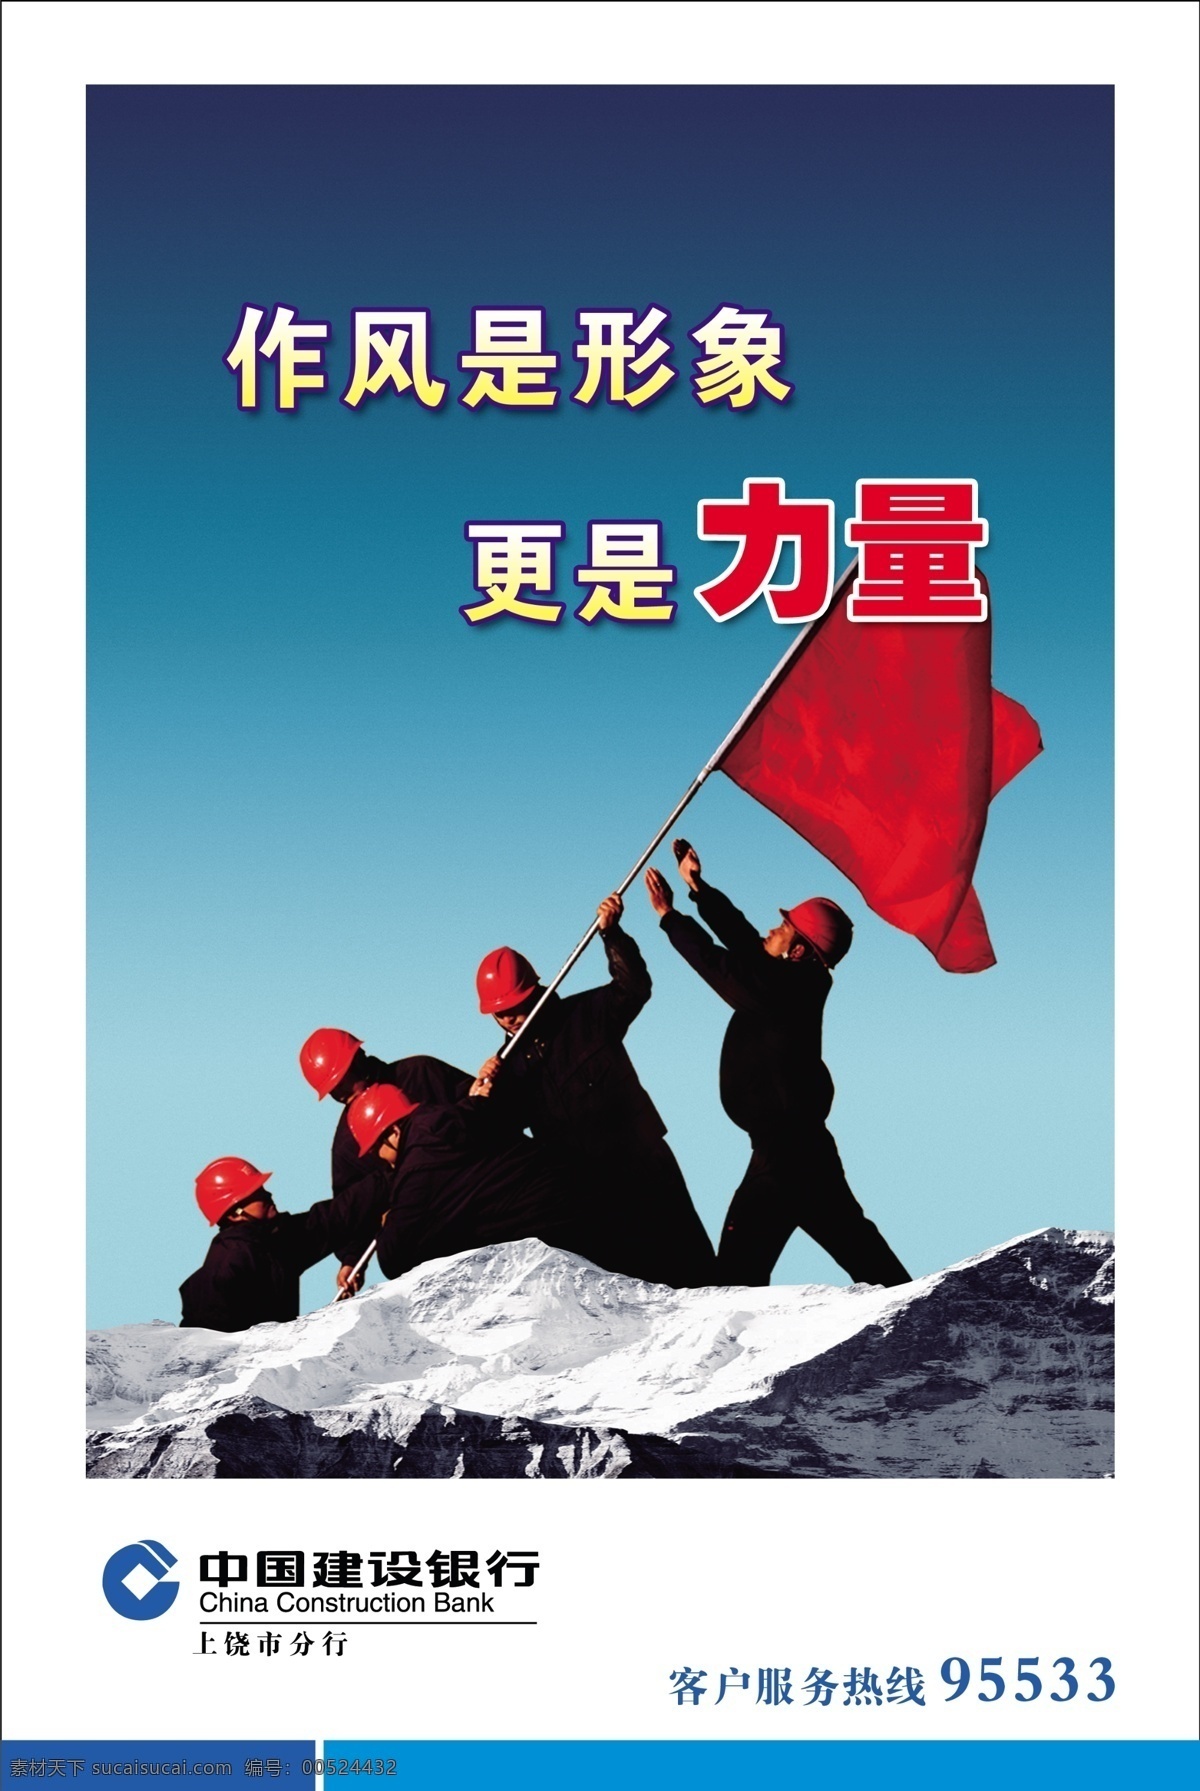 企业形象 广告设计模板 力量 源文件 中国建设银行 作风 攀山 展板 企业文化展板